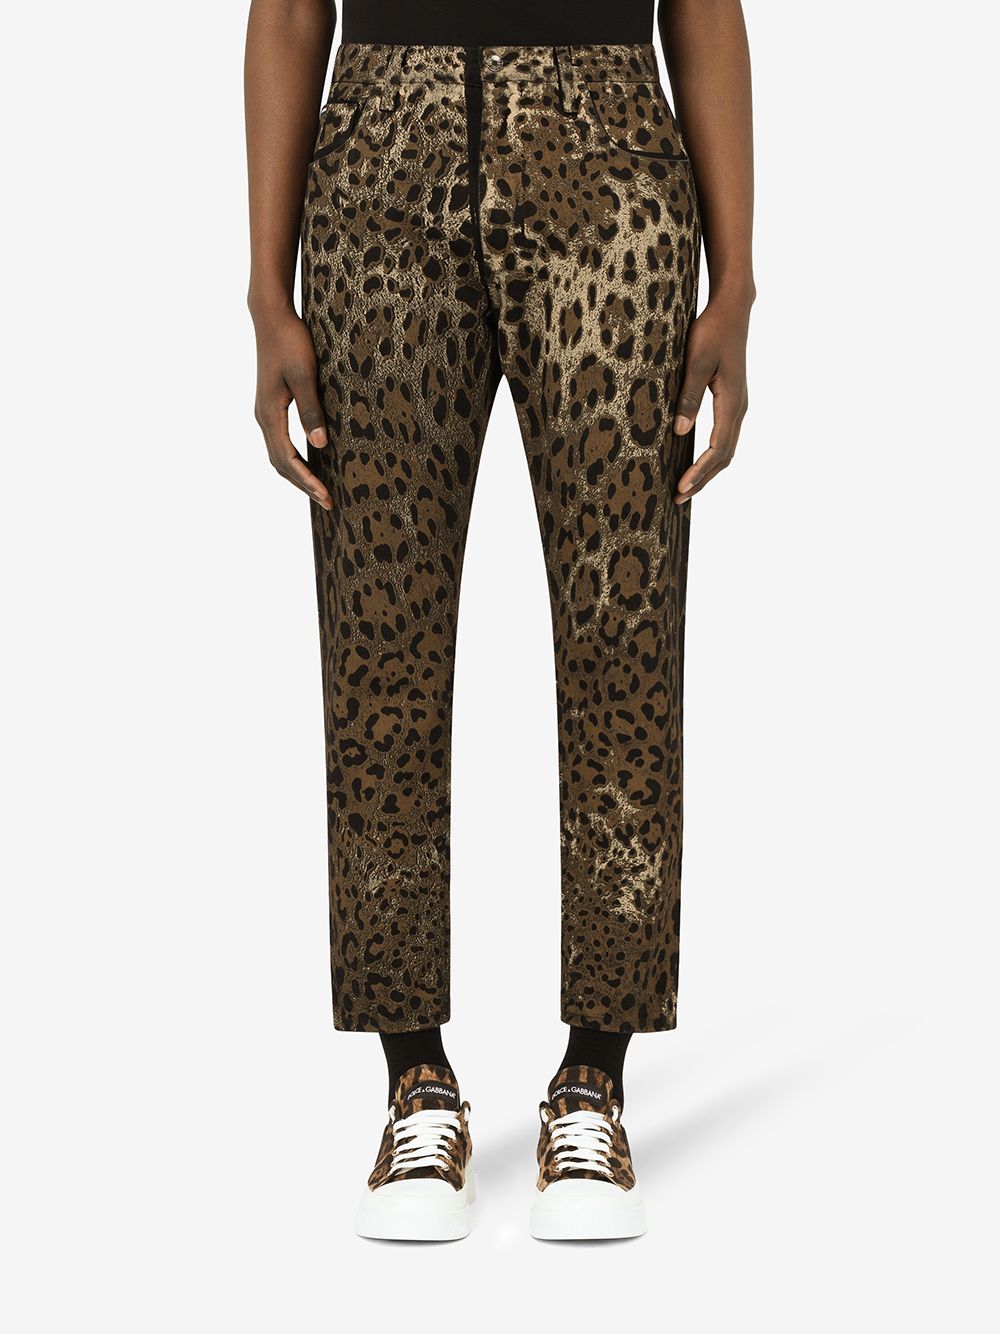 фото Dolce & gabbana укороченные брюки с леопардовым принтом